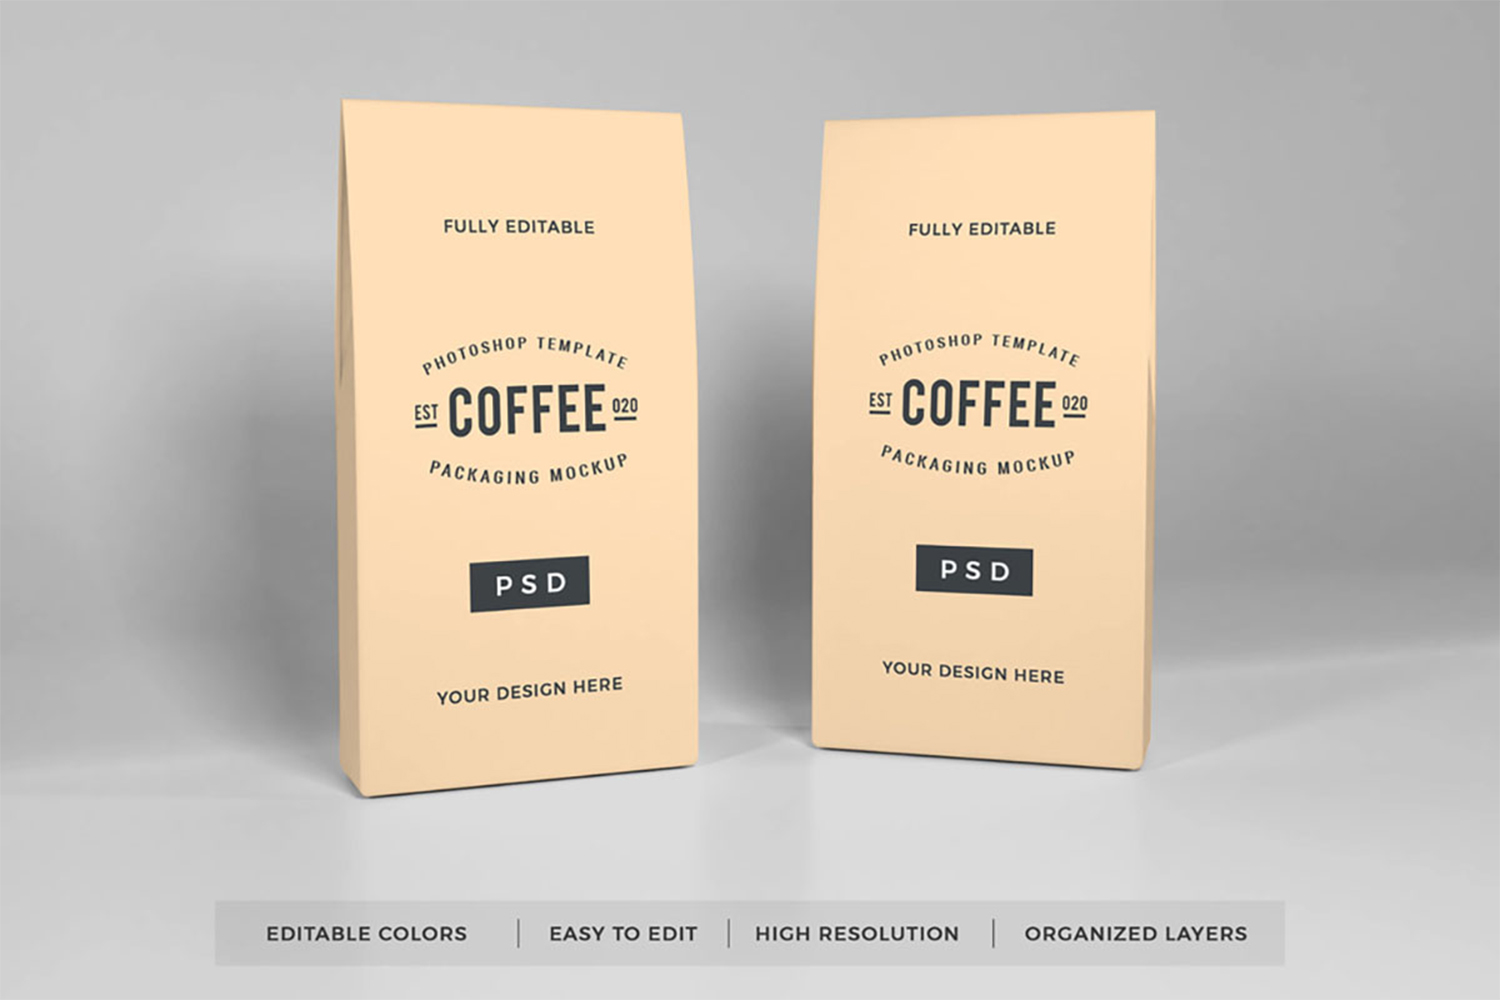 Coffee Packaging Mockup Free Download